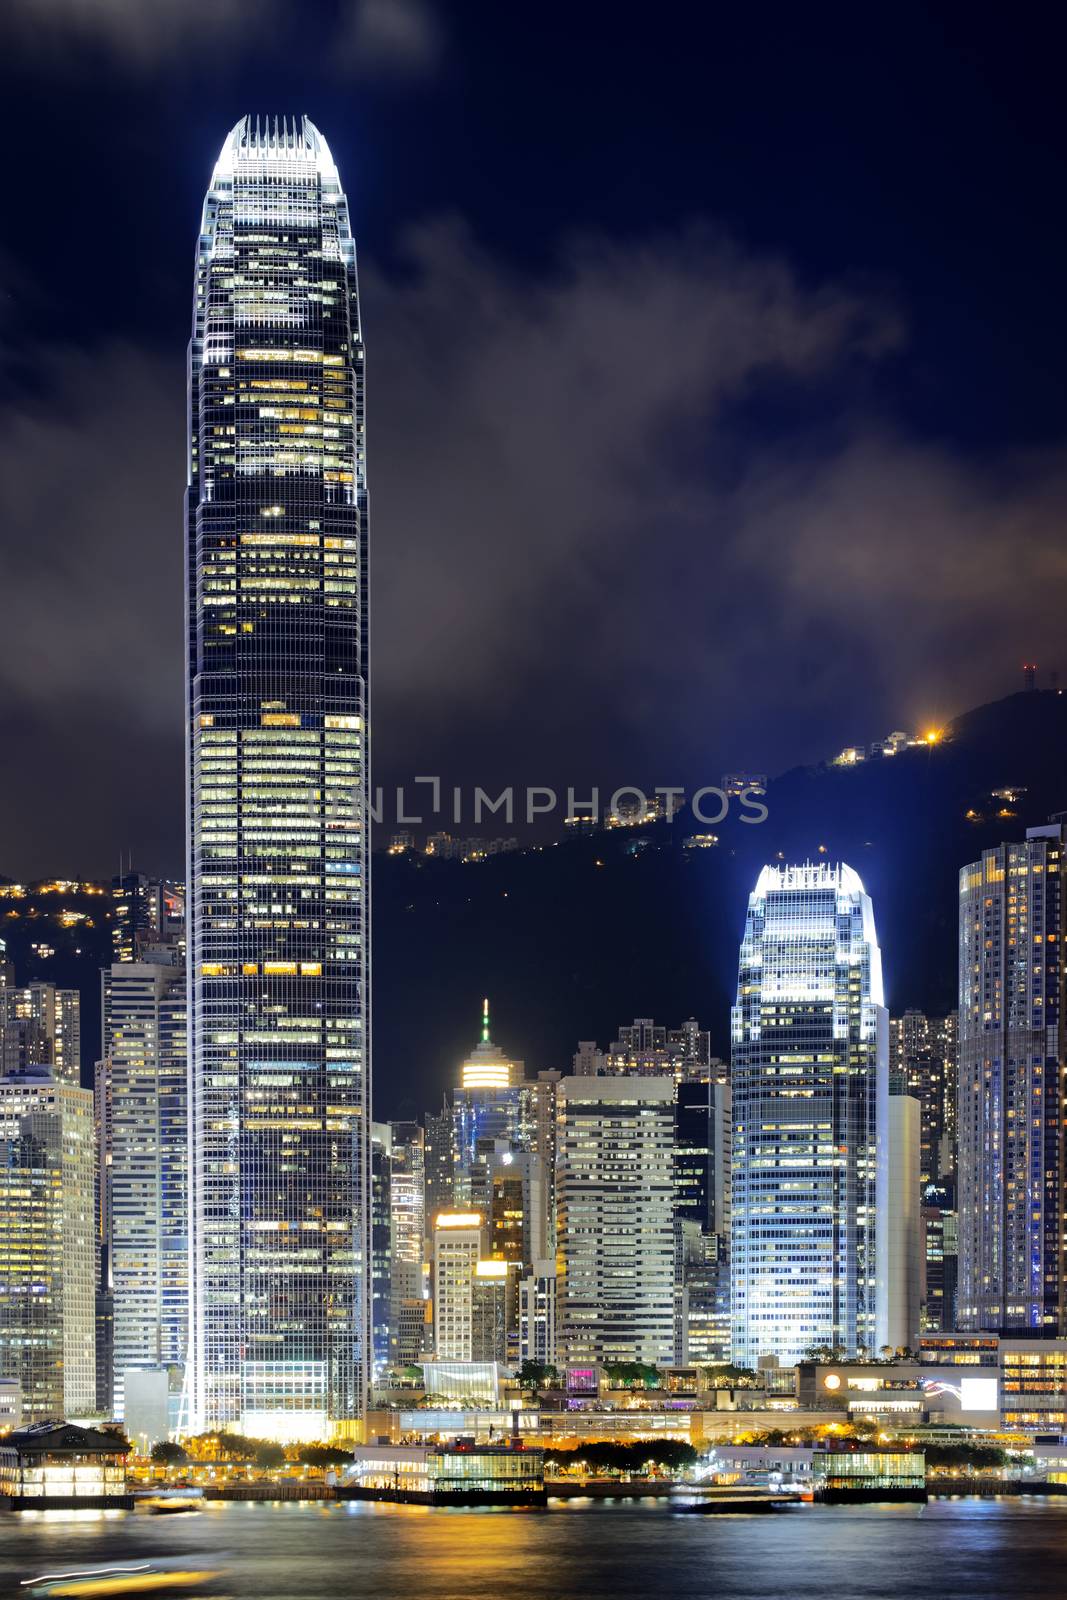 Hong Kong at night by cozyta